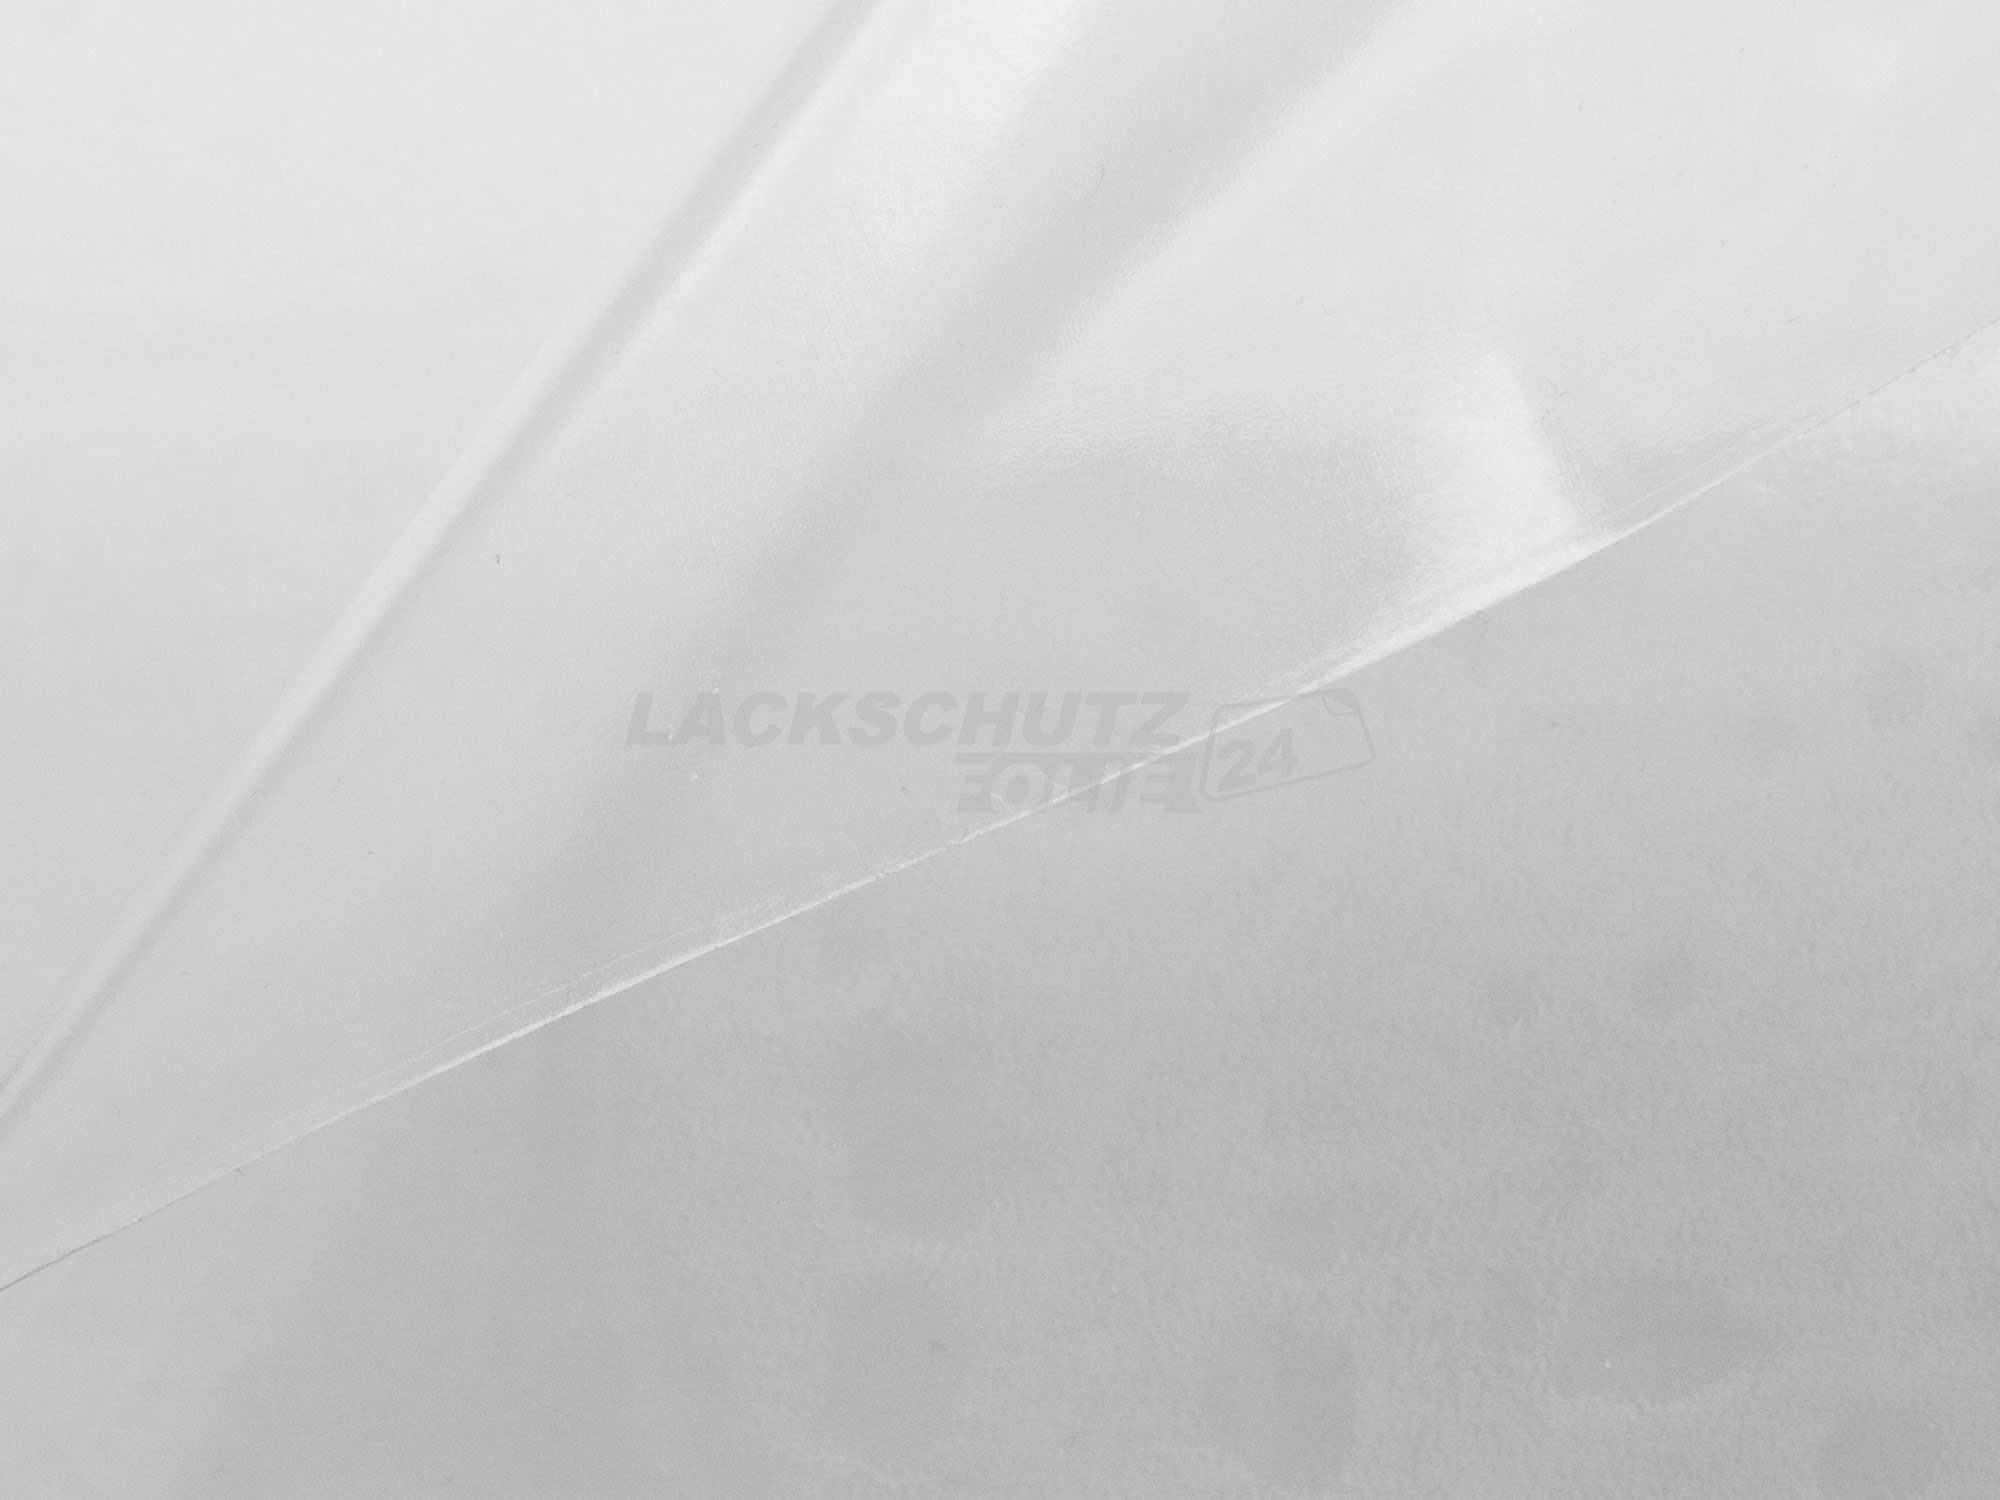 Ladekantenschutzfolie - Transparent Glatt Hochglänzend 150 µm stark für Daewoo Evanda 2002-2006